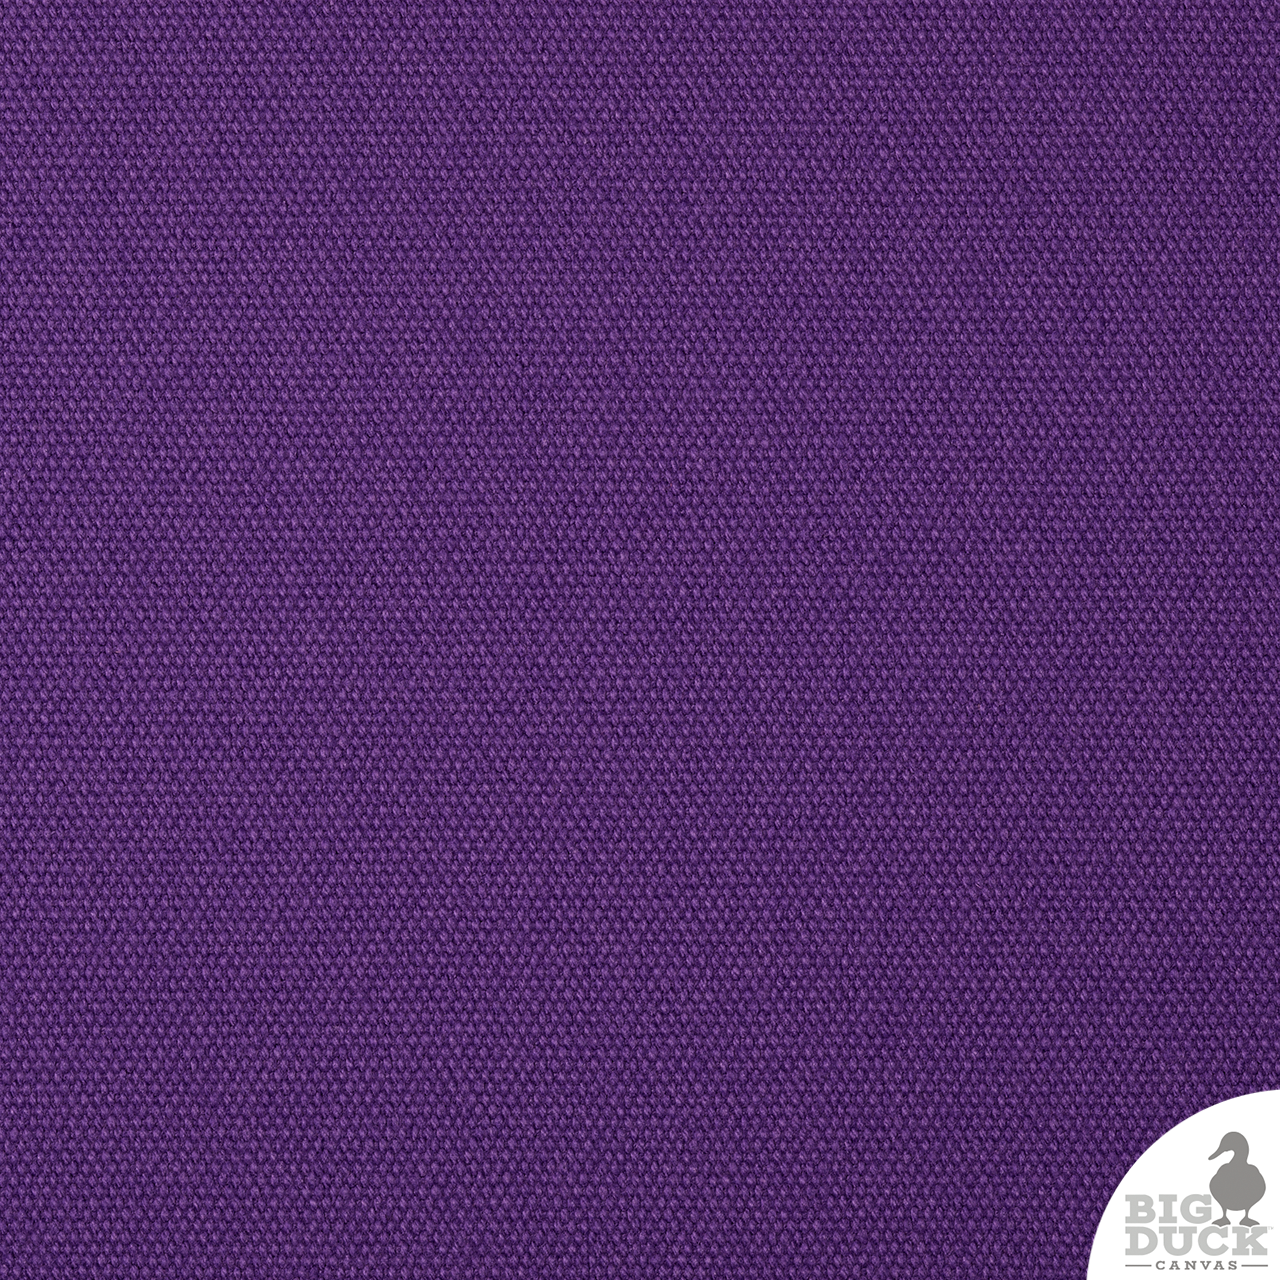 #8/60 Cotton Canvas Duck - Purple